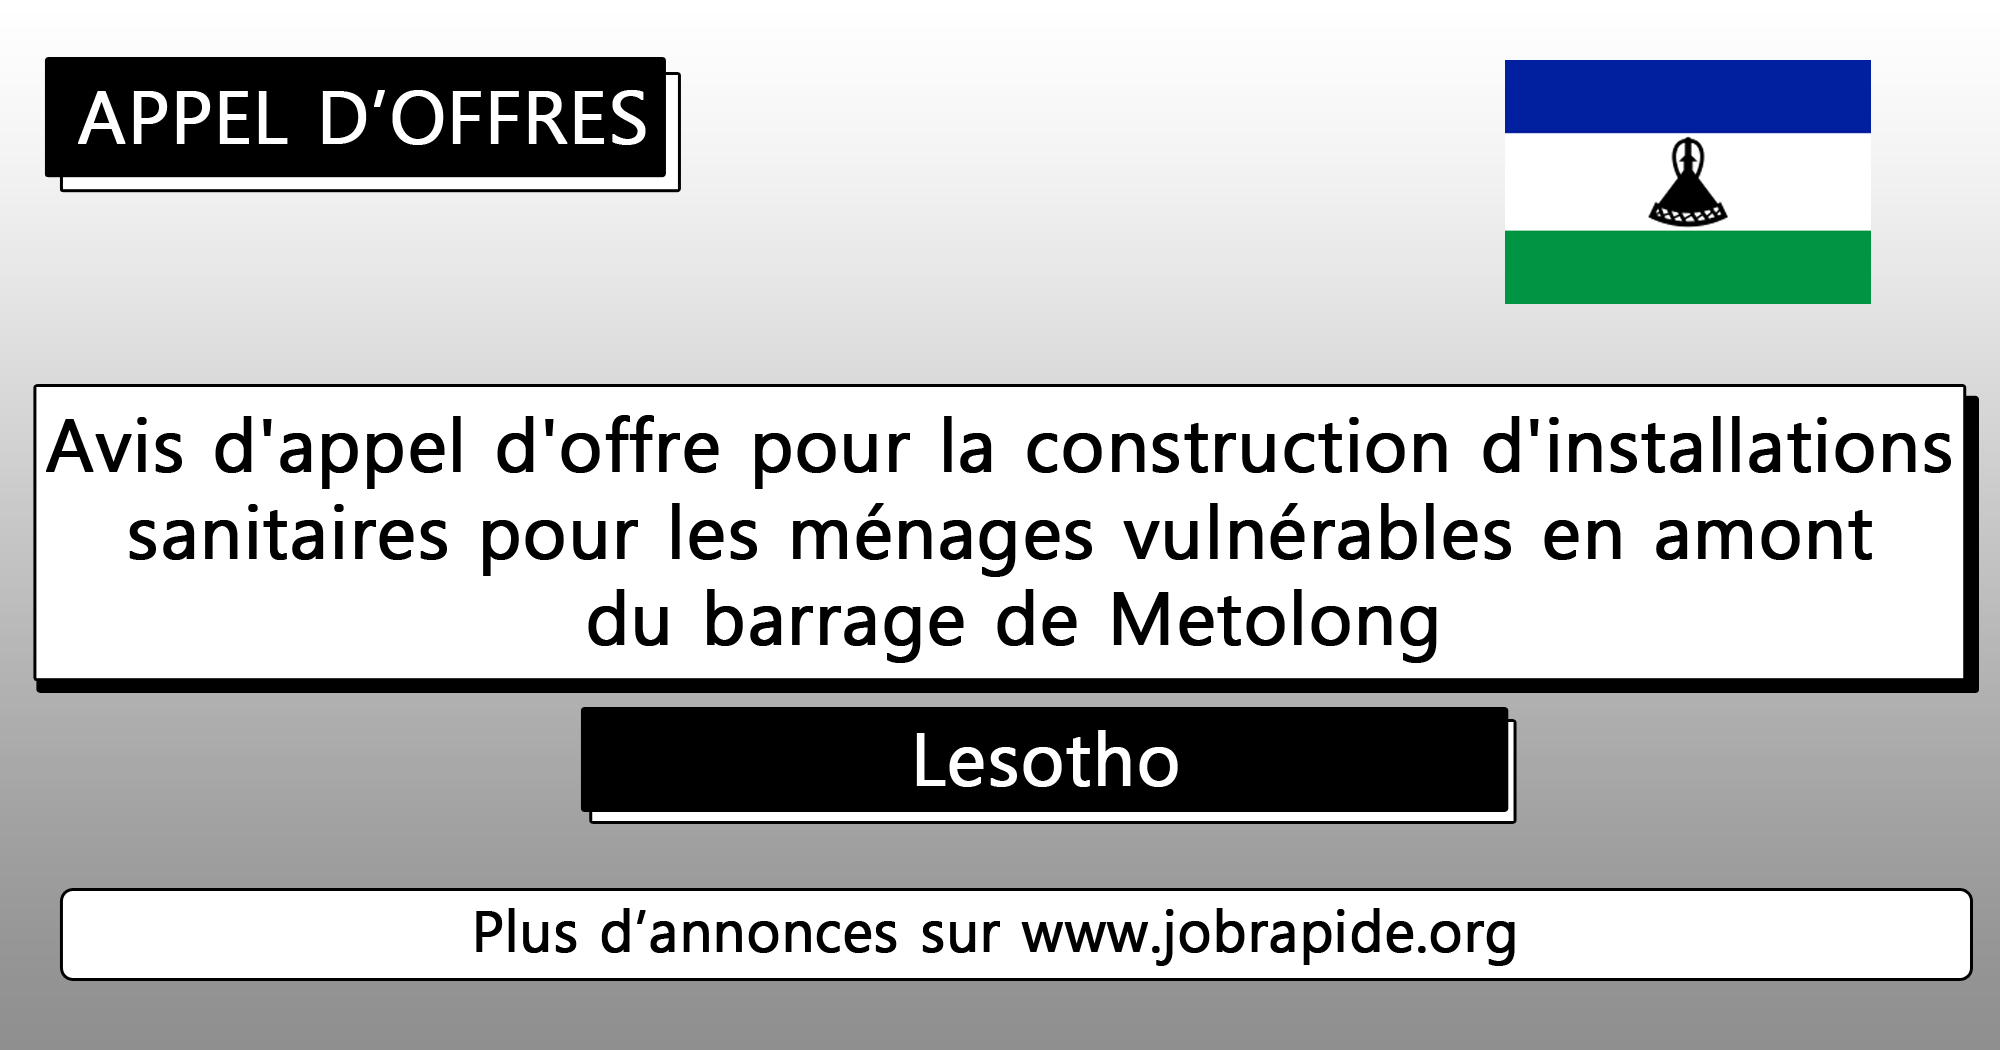 Avis d’appel d’offre pour la construction d’installations sanitaires pour les ménages vulnérables en amont du barrage de Metolong, Lesotho